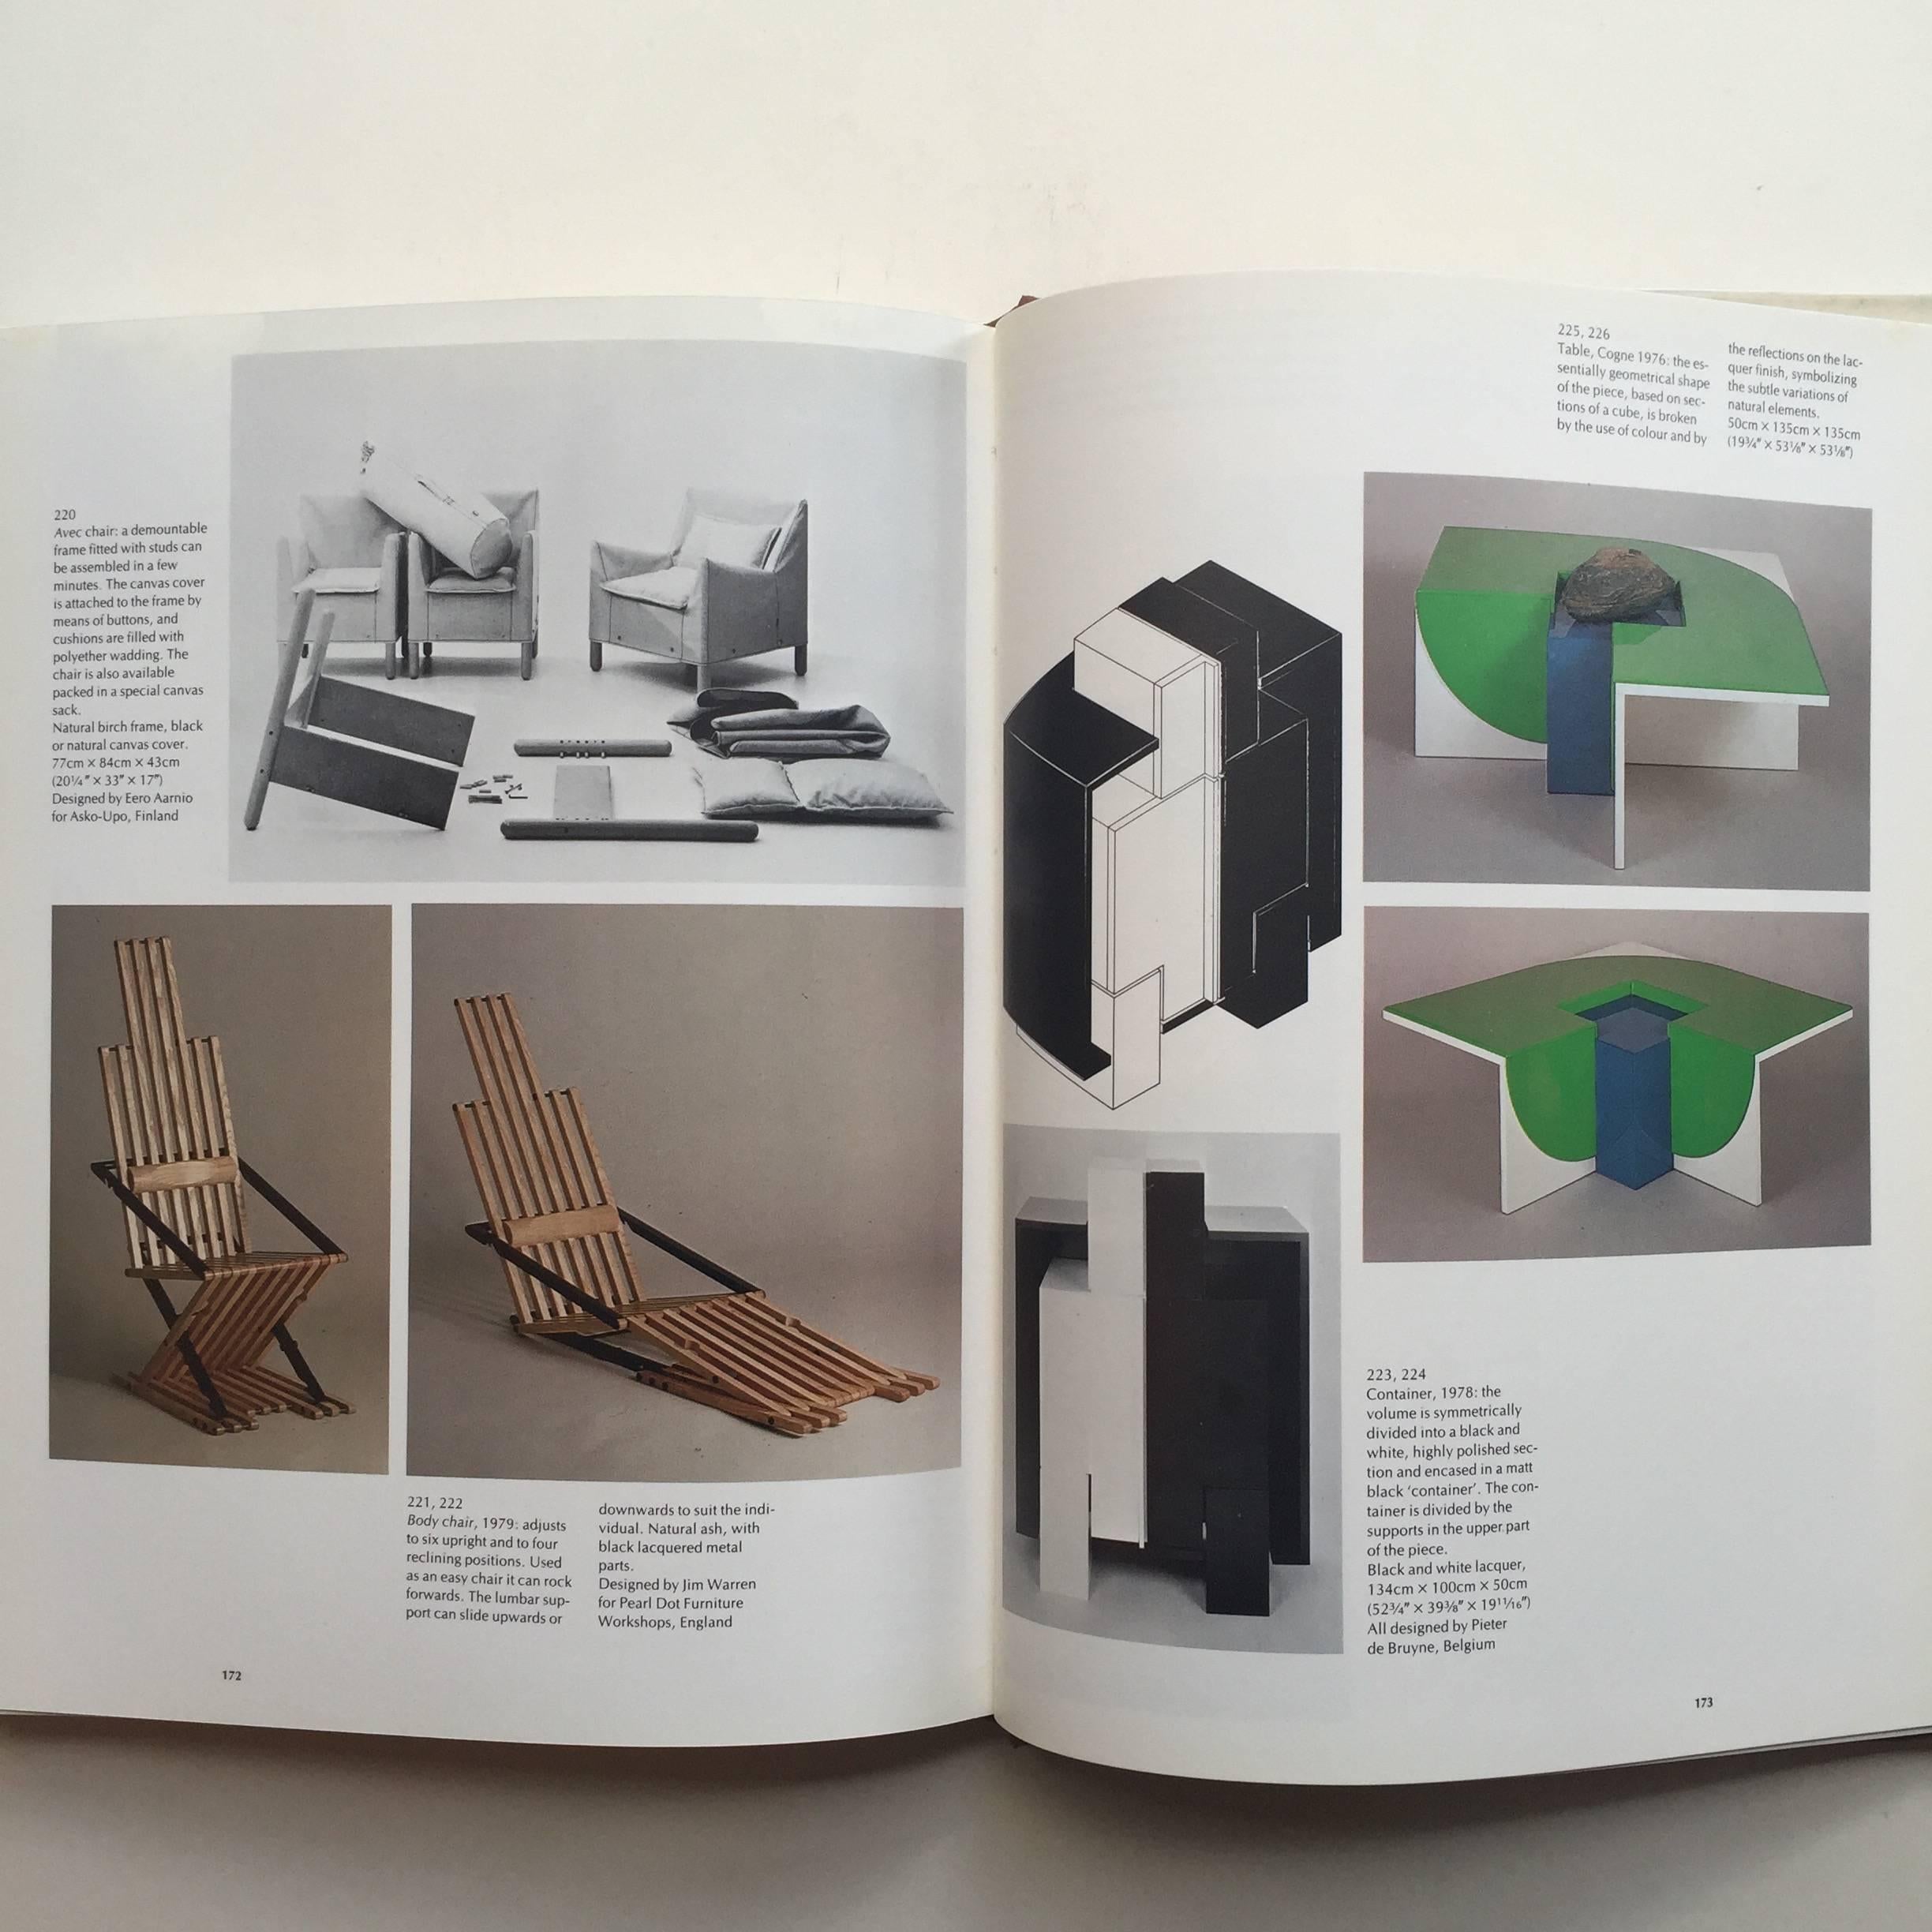 20ième siècle Art décoratif et intérieurs modernes, aménagements d'intérieurs pour les personnes, 1980